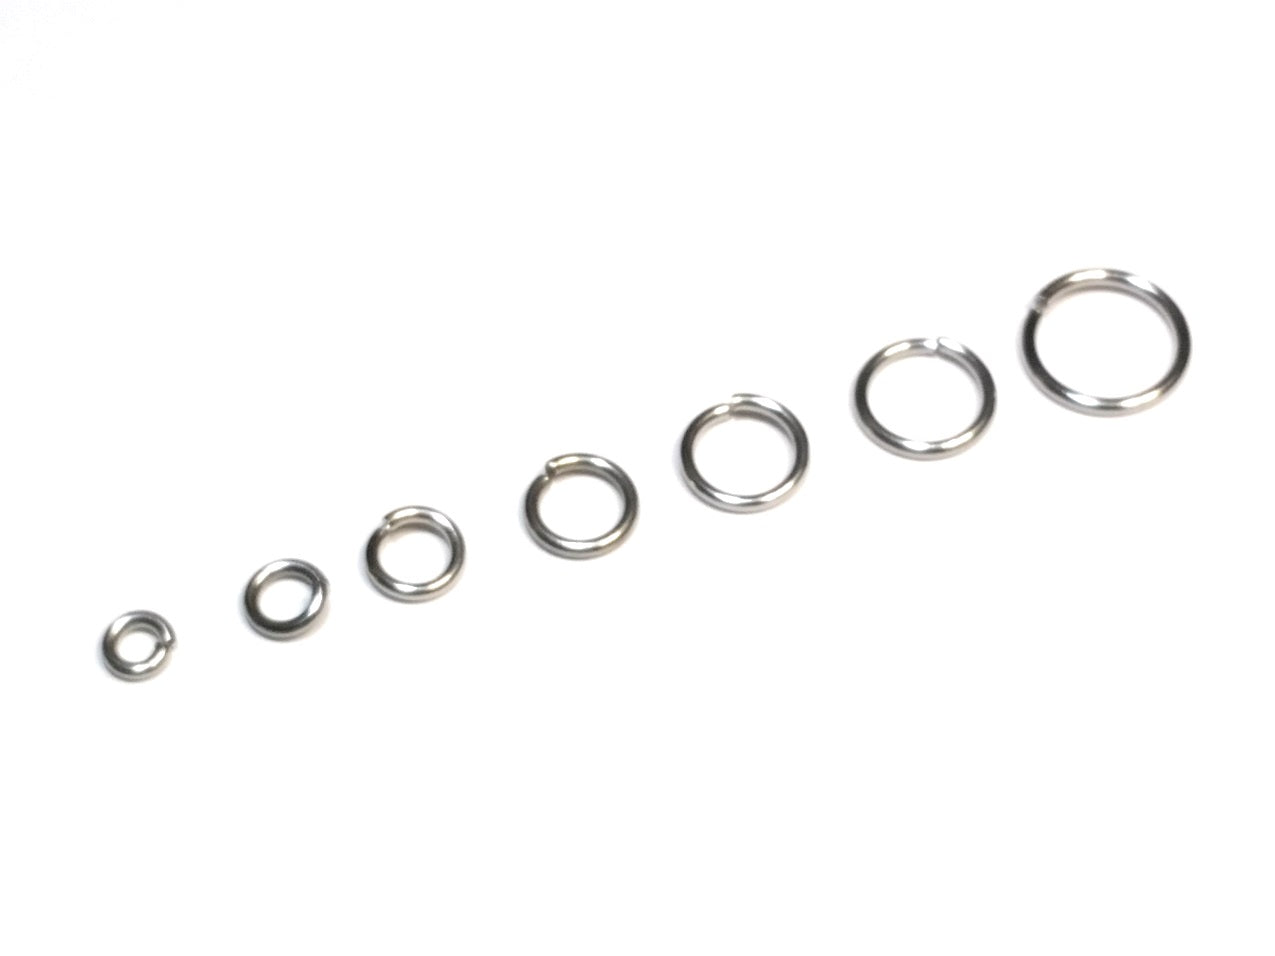 Stainless Steel 5mm I.D. 16 Gauge Jump Rings, 1/4 oz (~35 rings